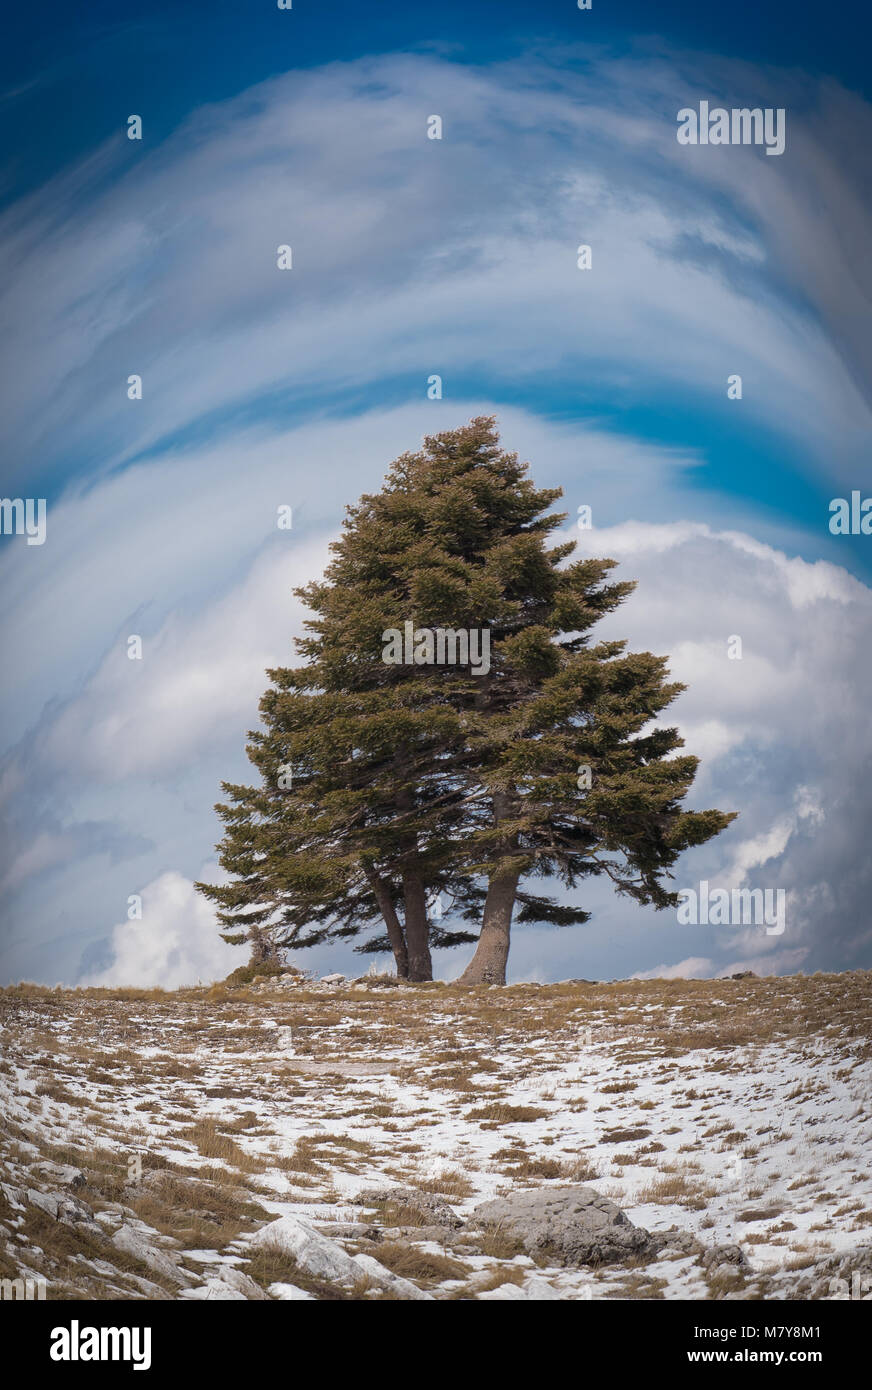 Fischaugenobjektiv eine winty bewölkt Landschaft mit einem einsamen großen Baum, Schnee auf dem Boden unter blauem Himmel und Wolken auf dem Berg Helmos in der Nähe von Kalavryta Stadt Ich Stockfoto